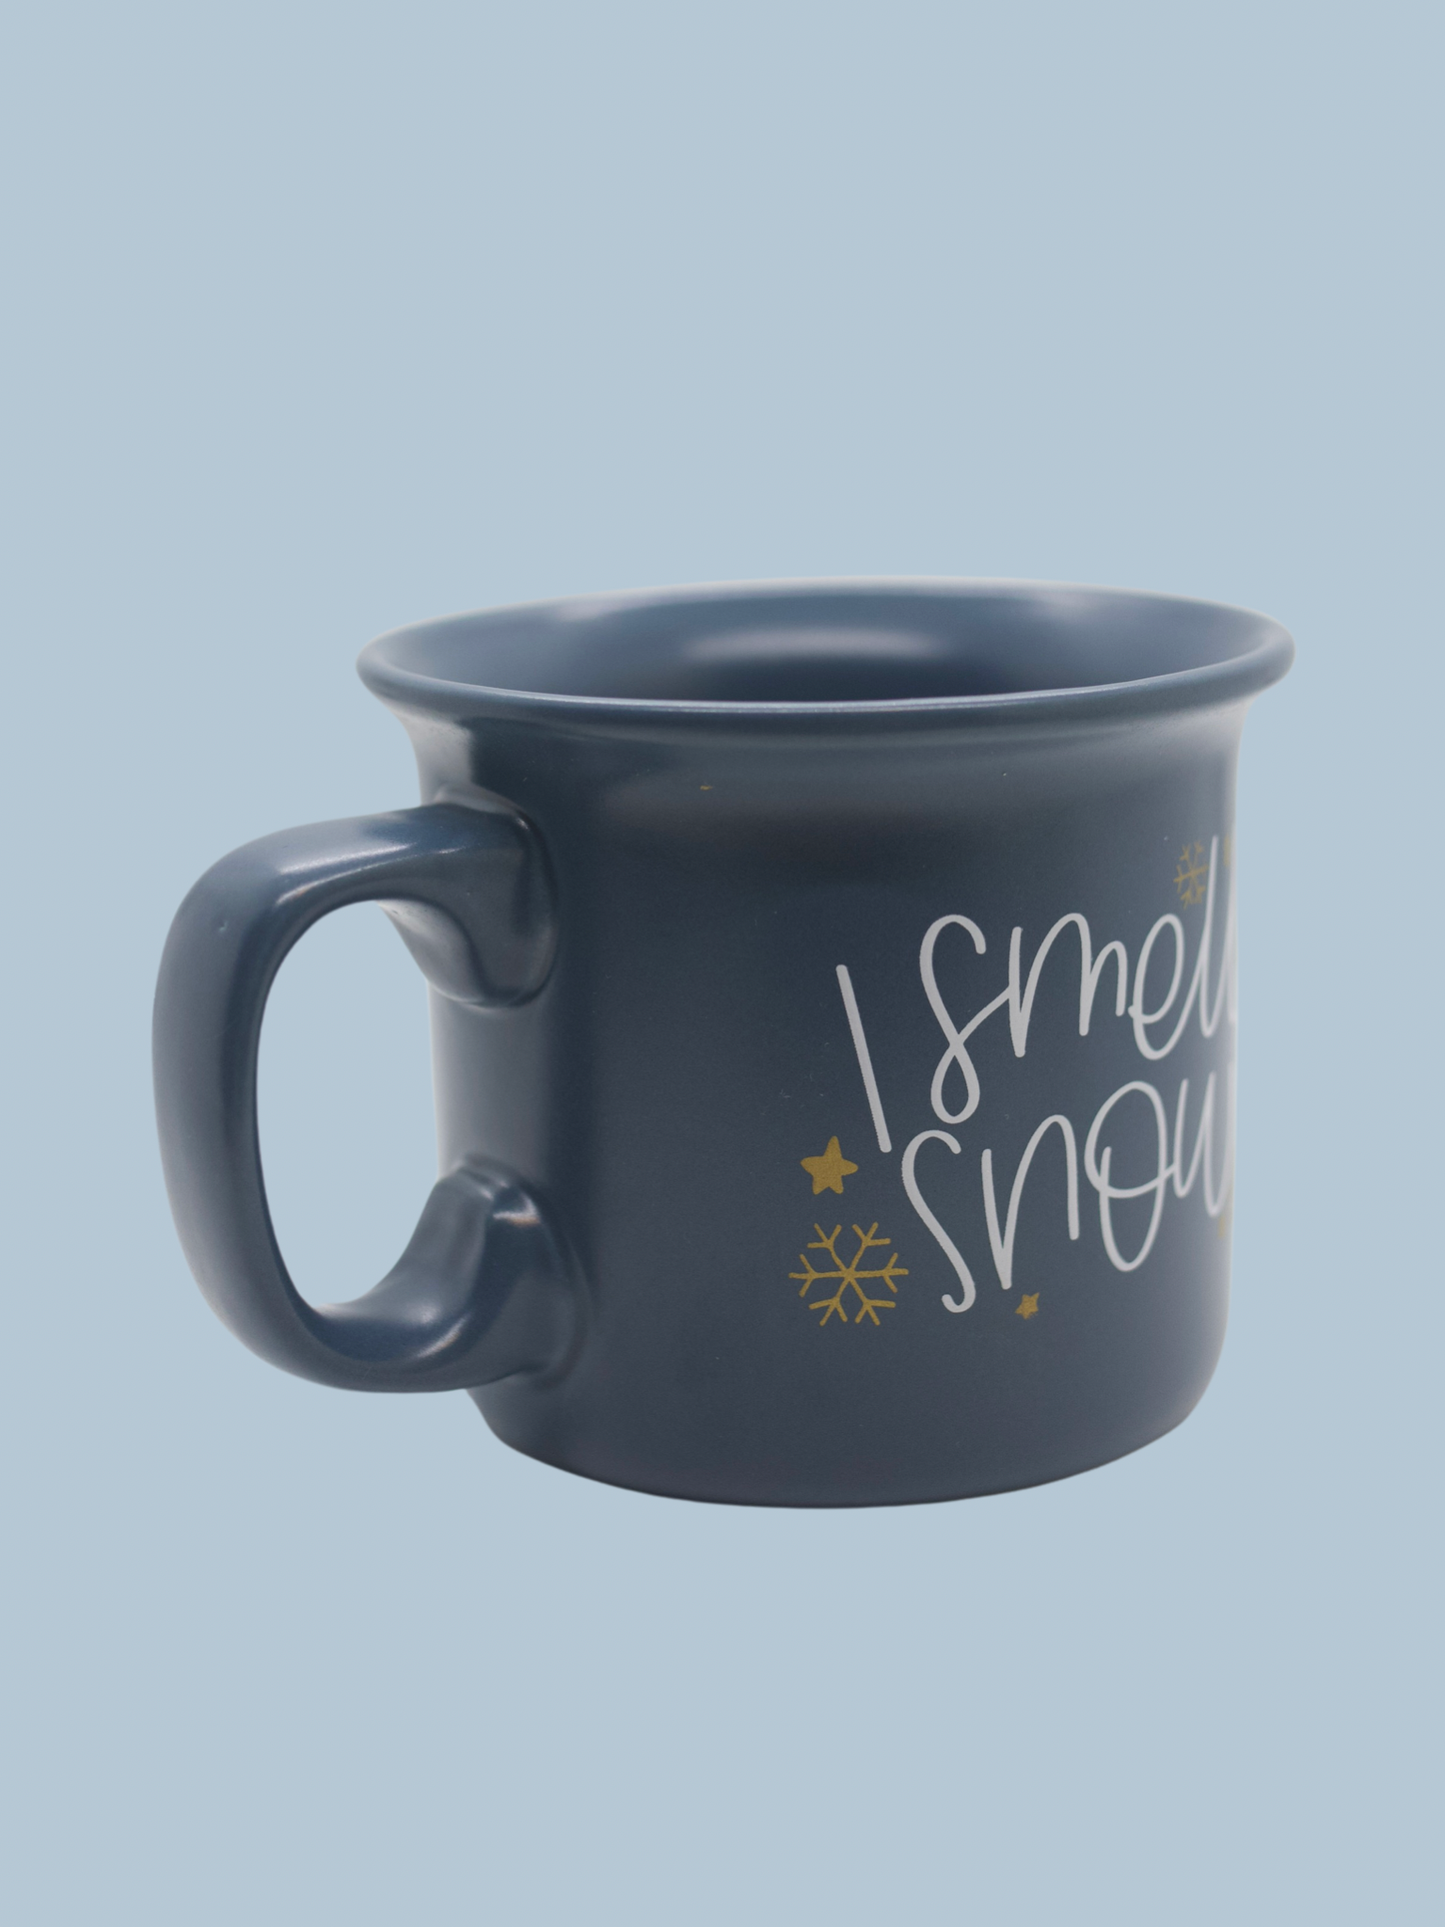 I Smell Snow Mug - 23